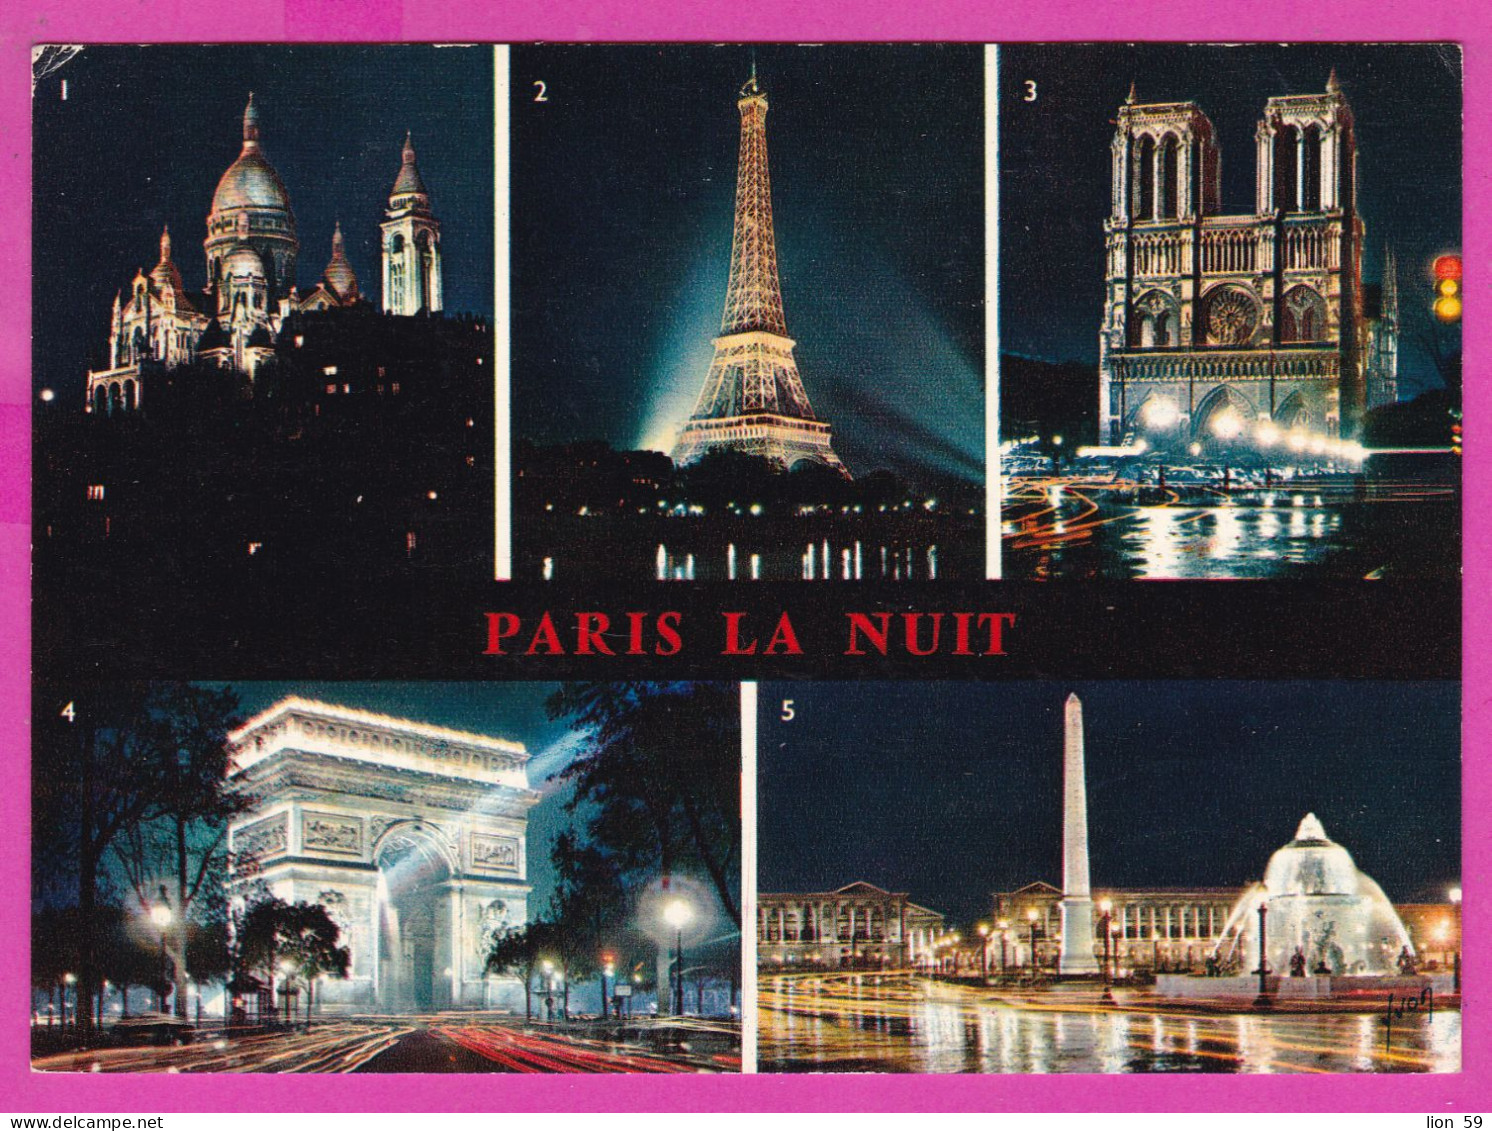 294102 / France - Paris La Nuit Tour Eiffel Sacre-Coeur NotPC 1970 Paris USED 0.45 Fr. - 16 VI 1970 Machine Stamps (ATM) - 1969 Montgeron – Weißes Papier – Frama/Satas